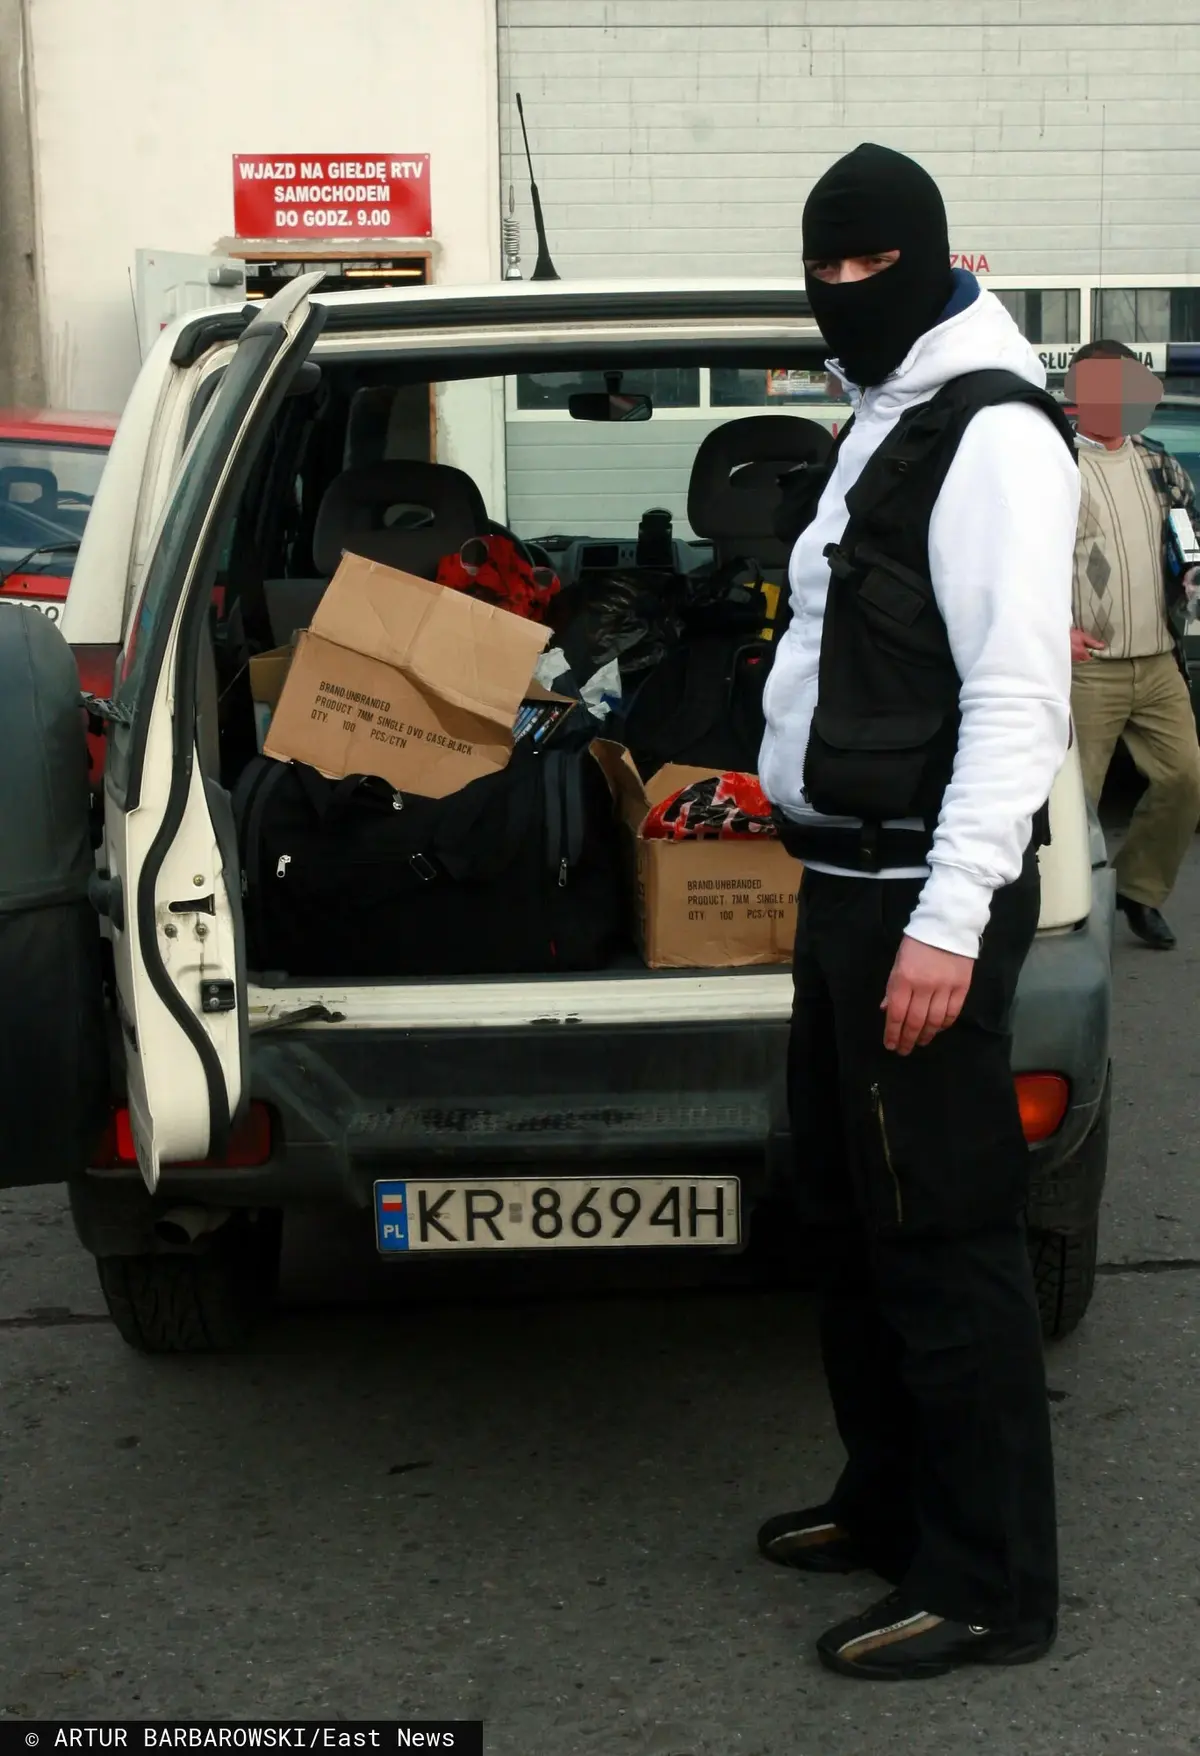 Mężczyzna w kominiarce stoi przy białym samochodzie